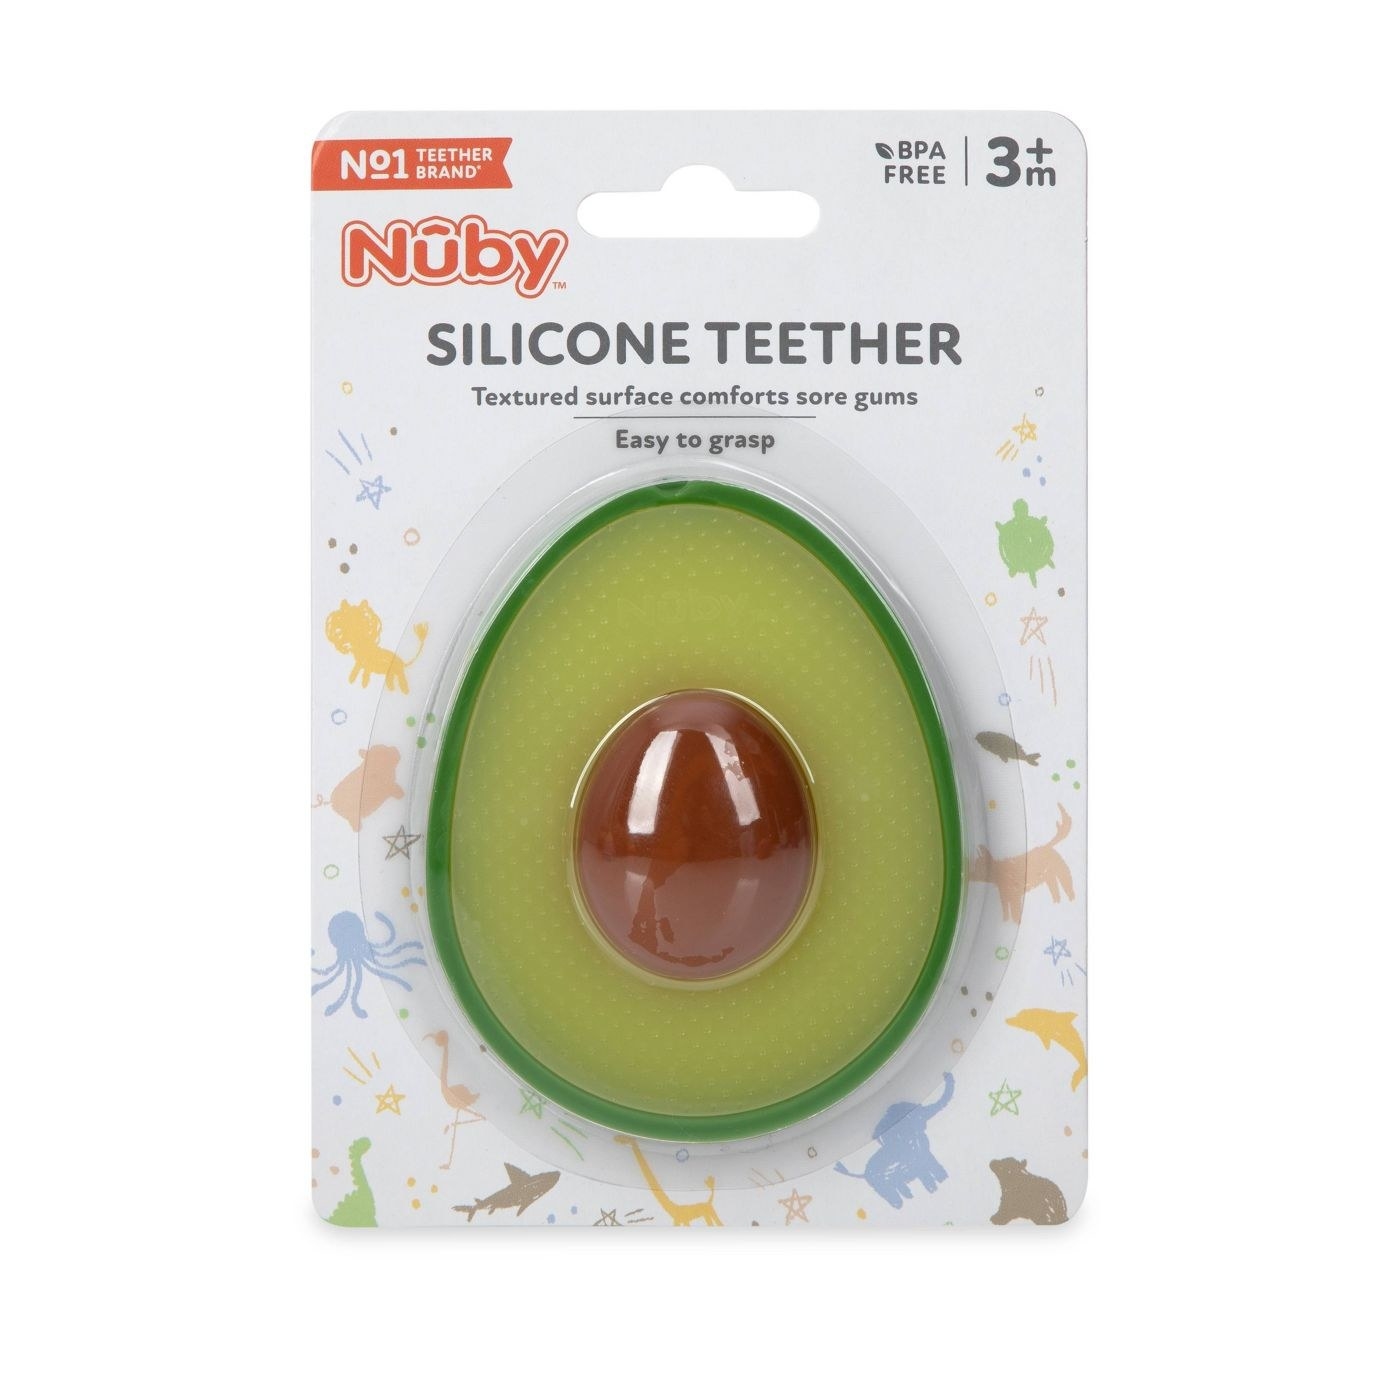 An avocado silicone teether